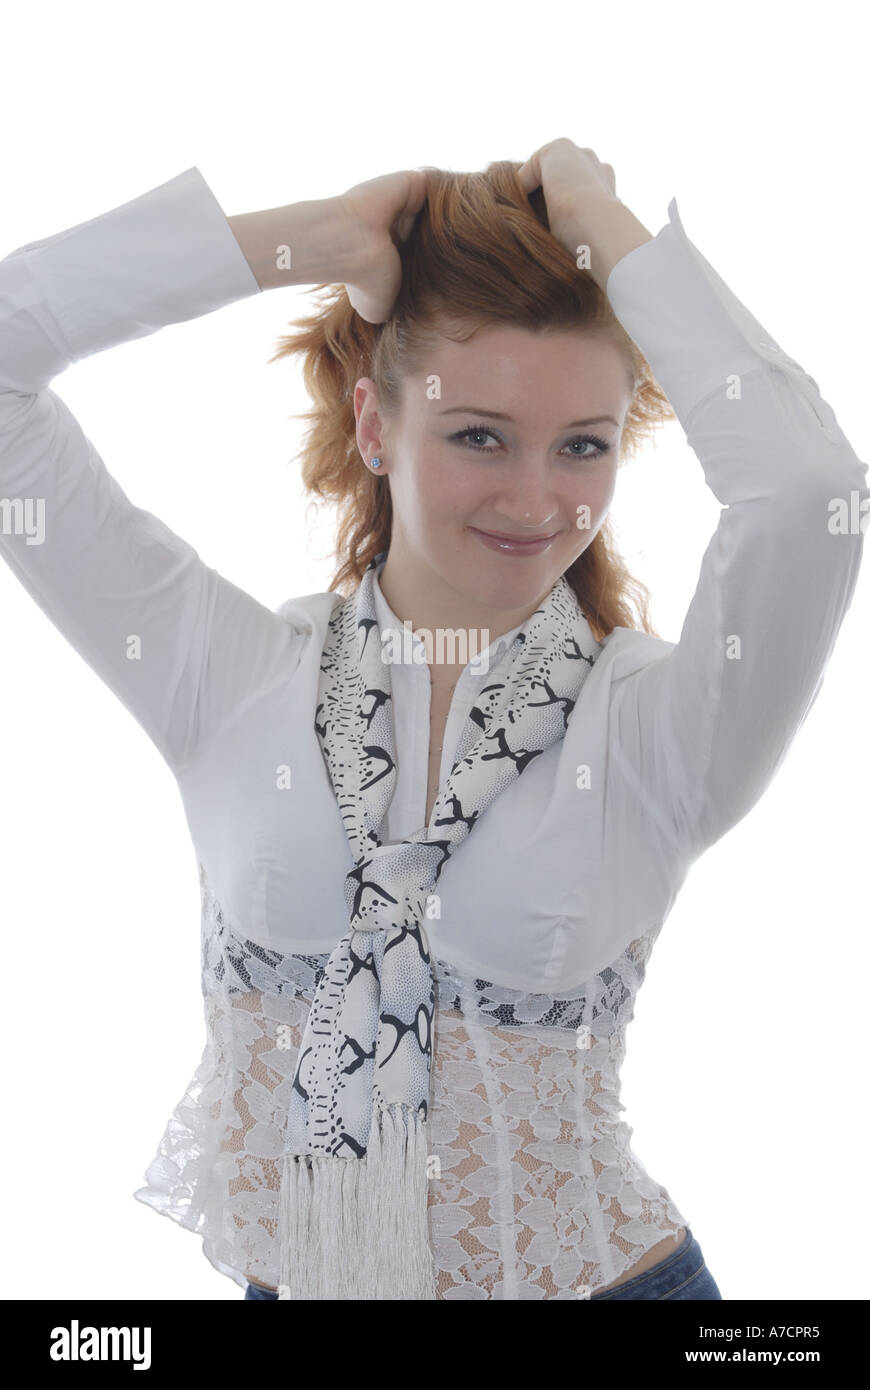 Junge Frau Maedchen braune Haare Pose Stock Photo